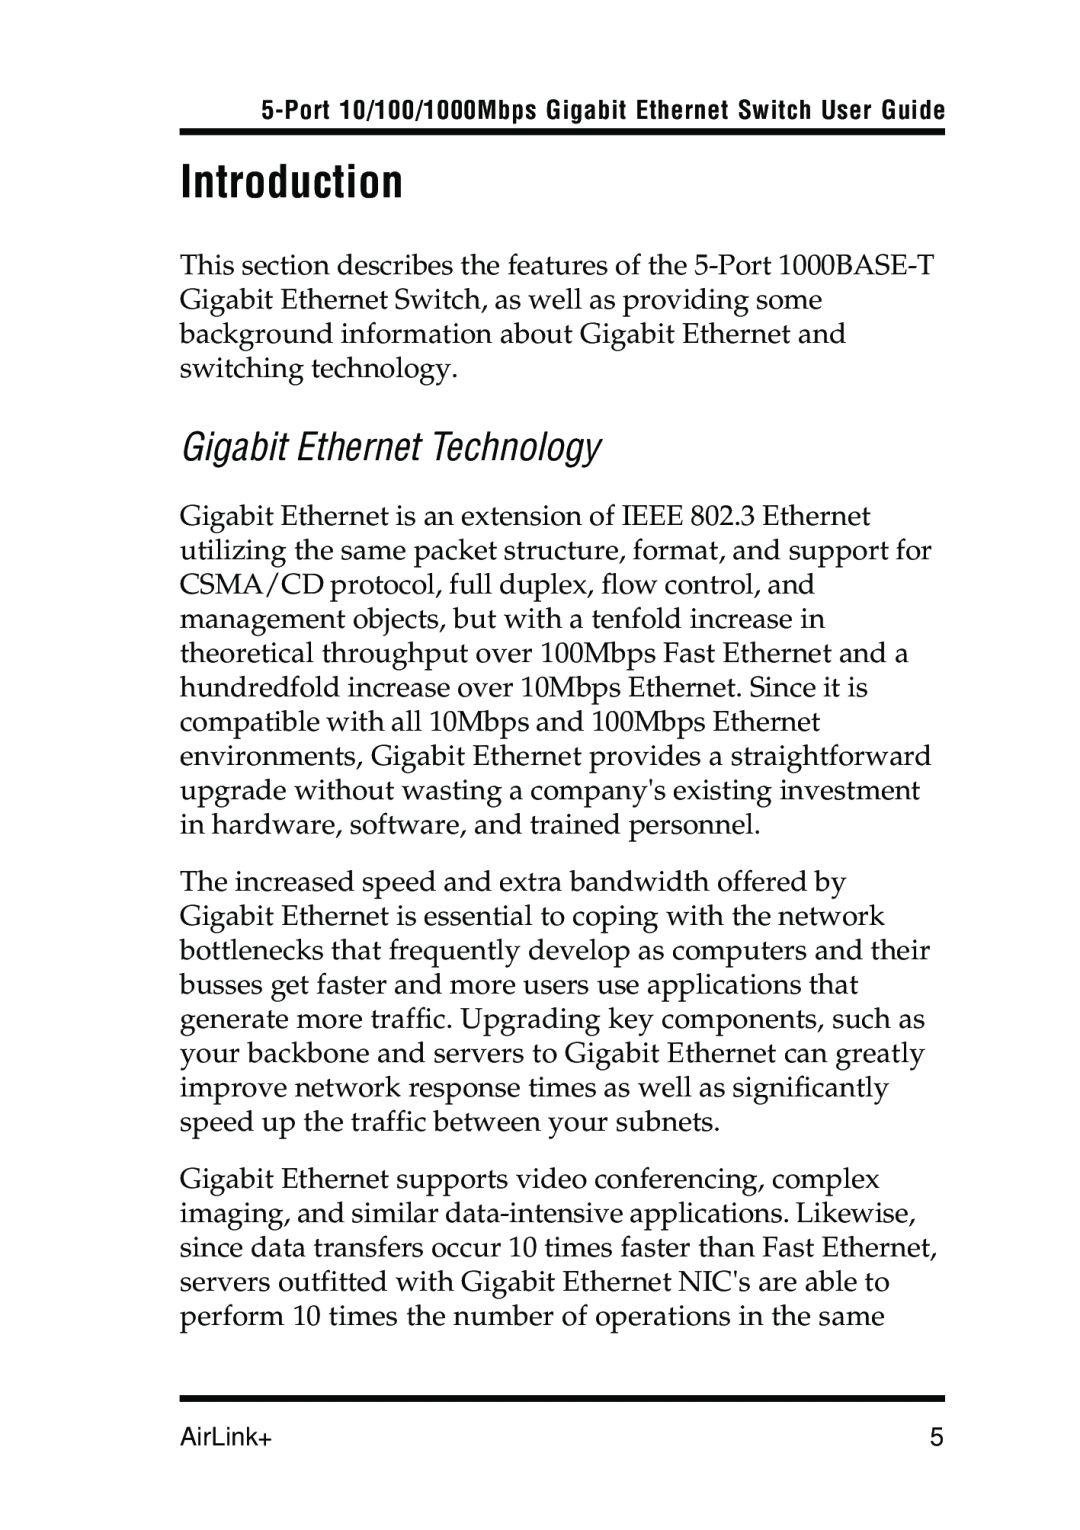 Airlink 5-Port manual Introduction, Gigabit Ethernet Technology 